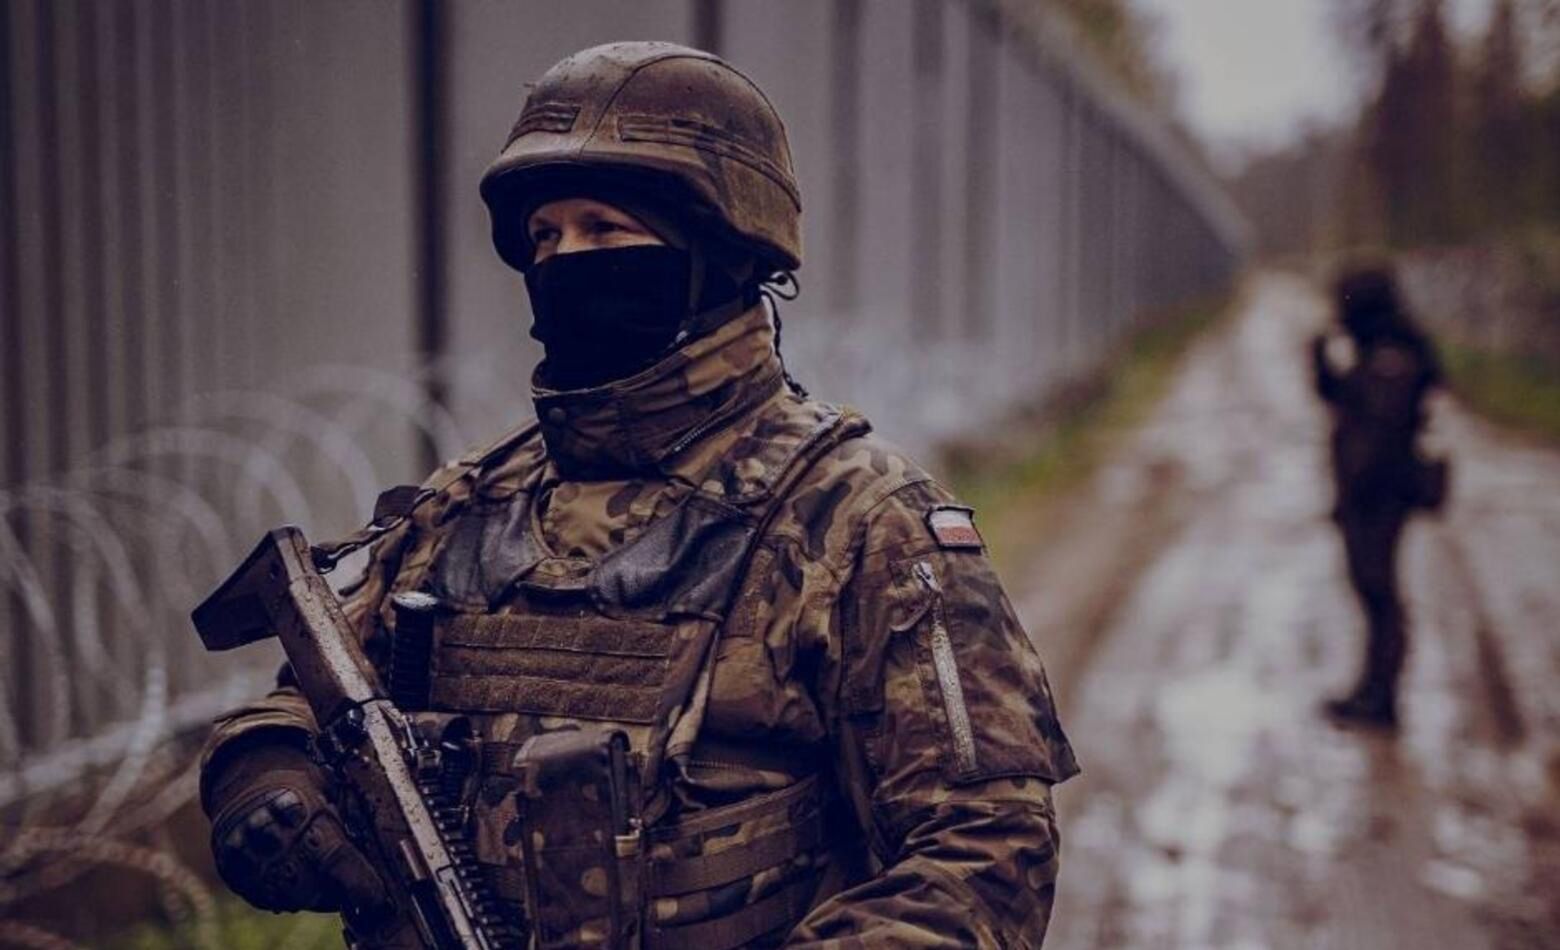 Białorusini szykowali ataki w Polsce? "Szkolenia snajperskie"